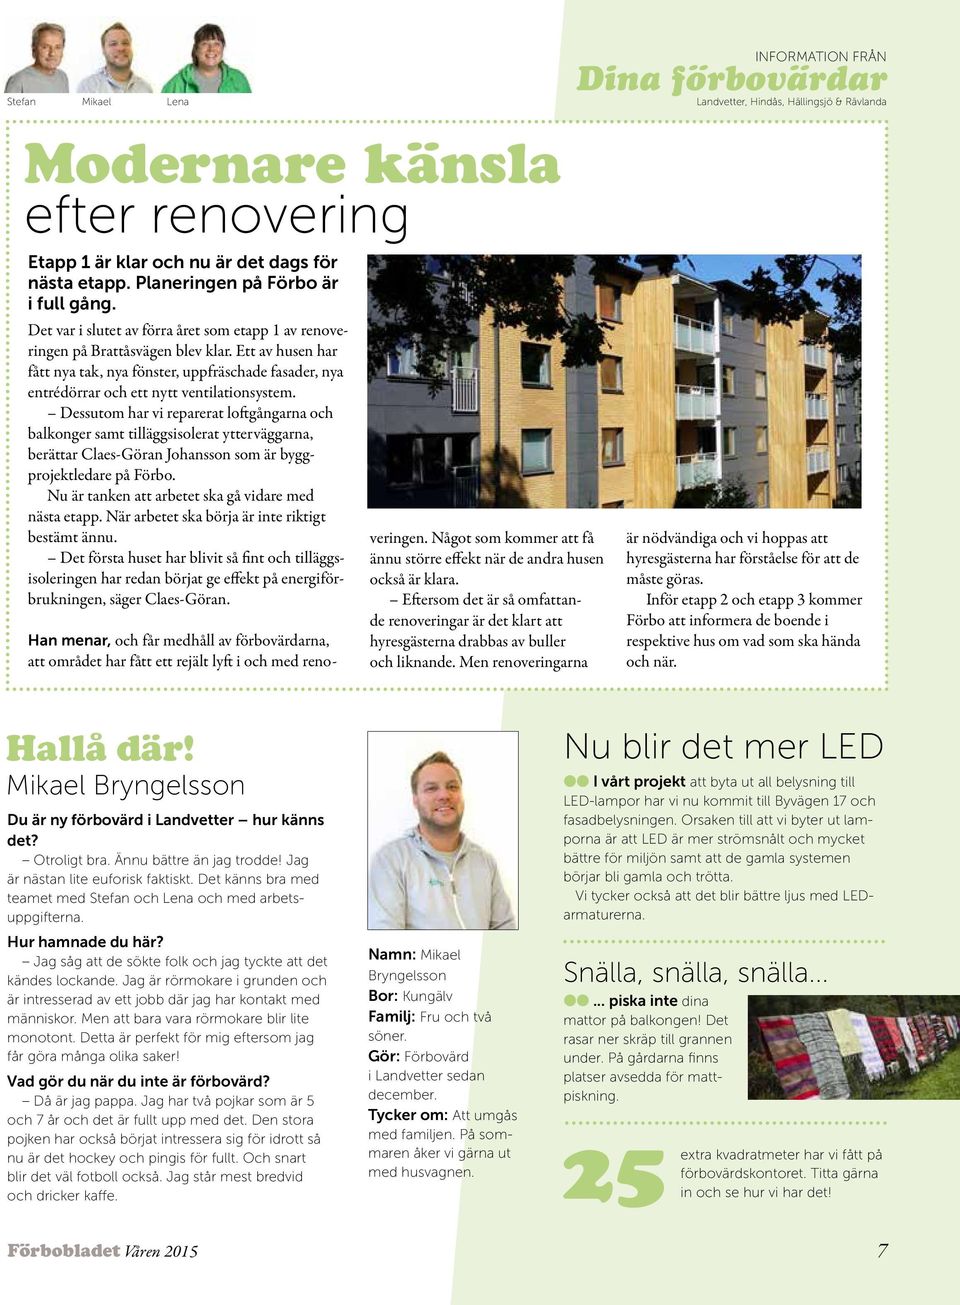 Dessutom har vi reparerat loftgångarna och balkonger samt tilläggsisolerat ytterväggarna, berättar Claes-Göran Johansson som är byggprojektledare på Förbo.